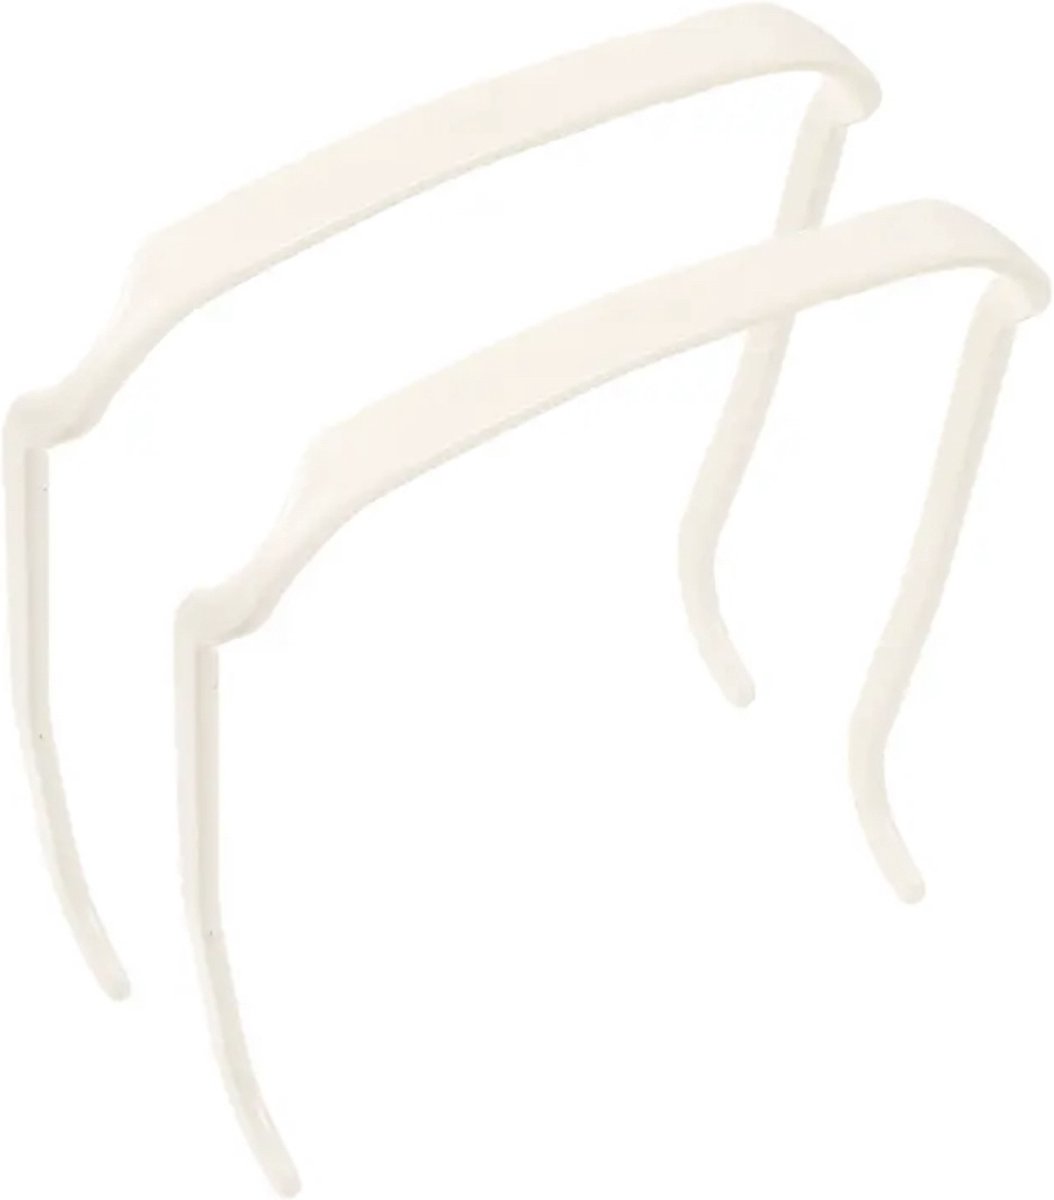 Zonnebril Haarband - Set van 2 - Zonnebril Haarband Effect - Haarband Zonnebril - Haarband- Haarbanden- 2 stuks - Wit